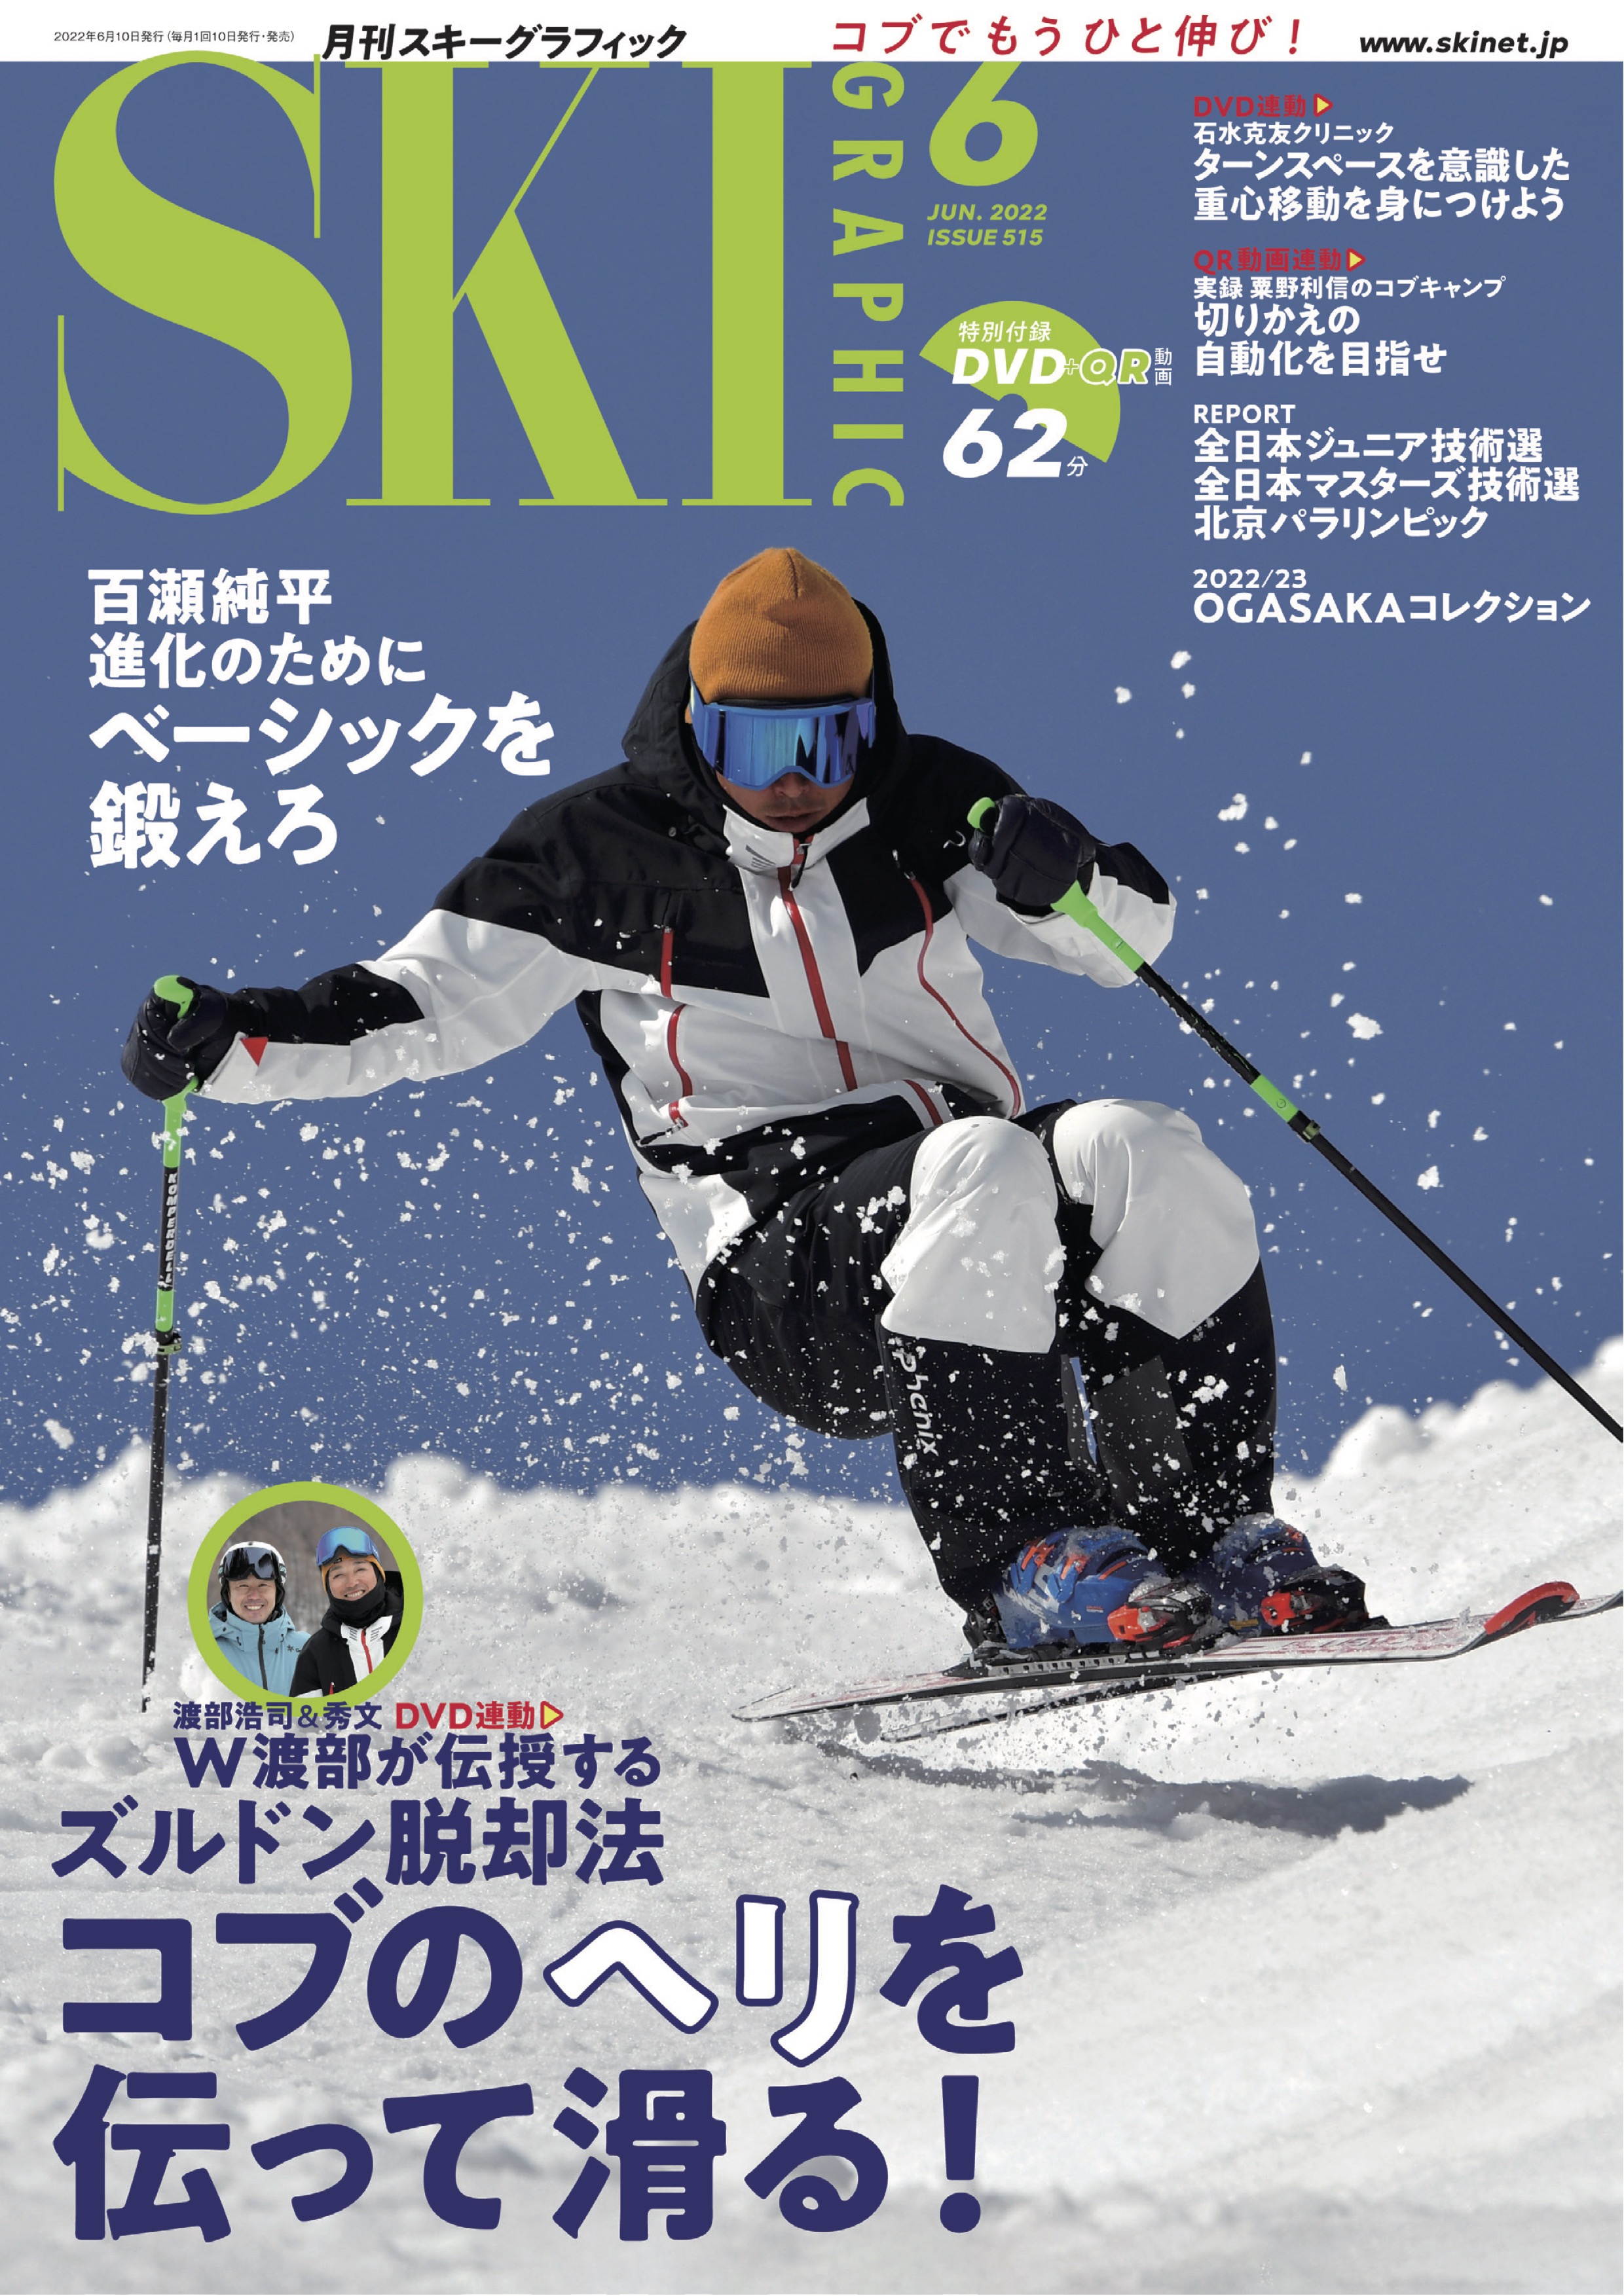 スキーグラフィックNo.515 - スキーグラフィック編集部 - 漫画・ラノベ